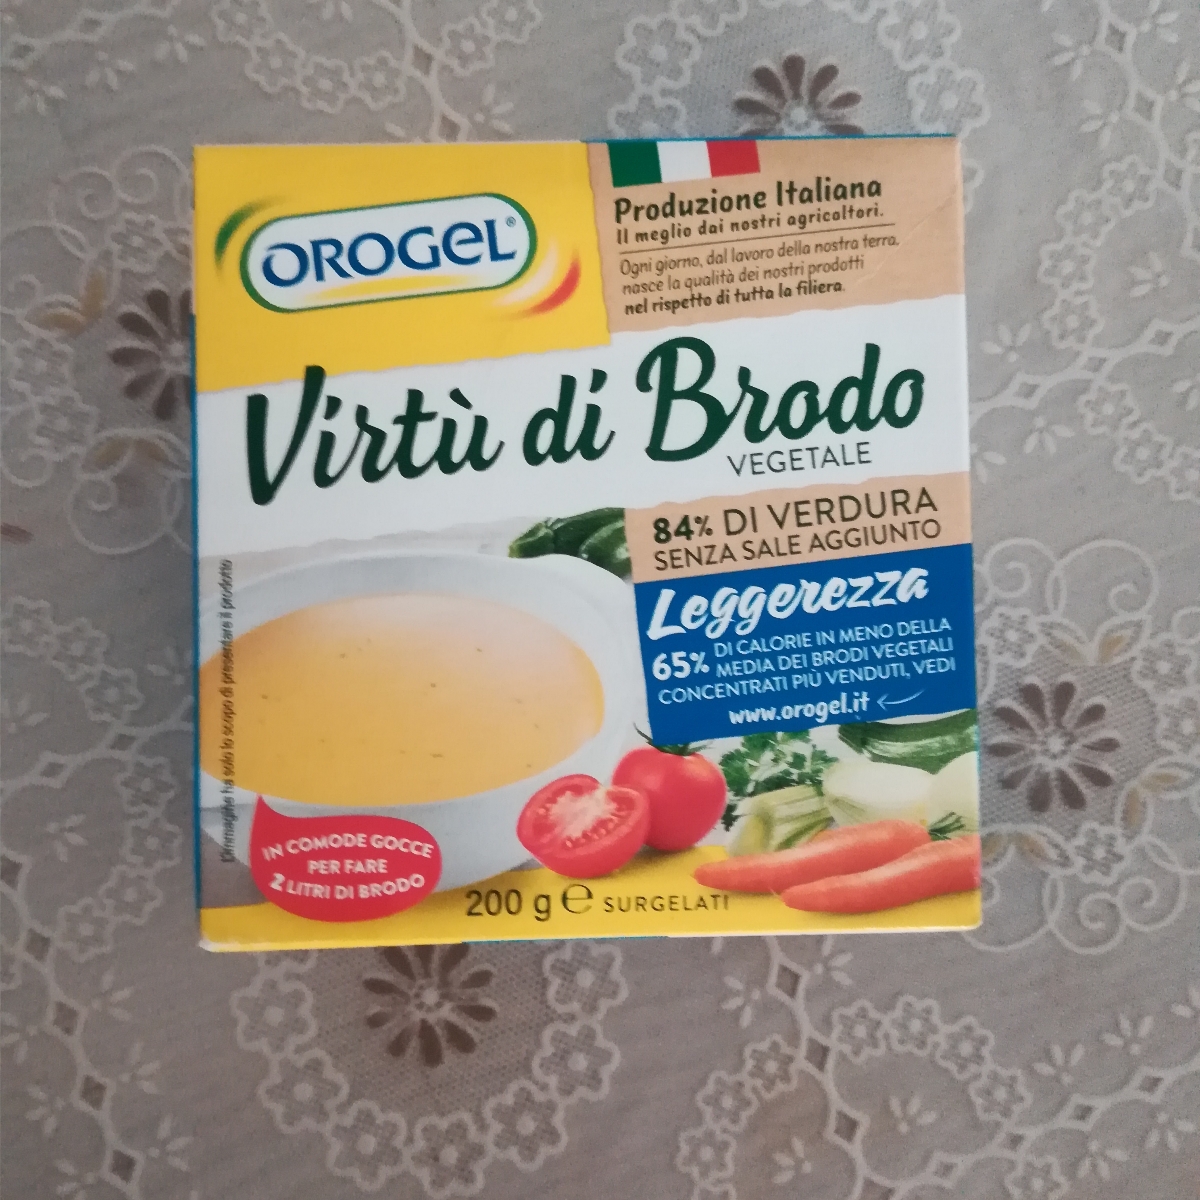 Orogel Virtù di brodo Reviews | abillion